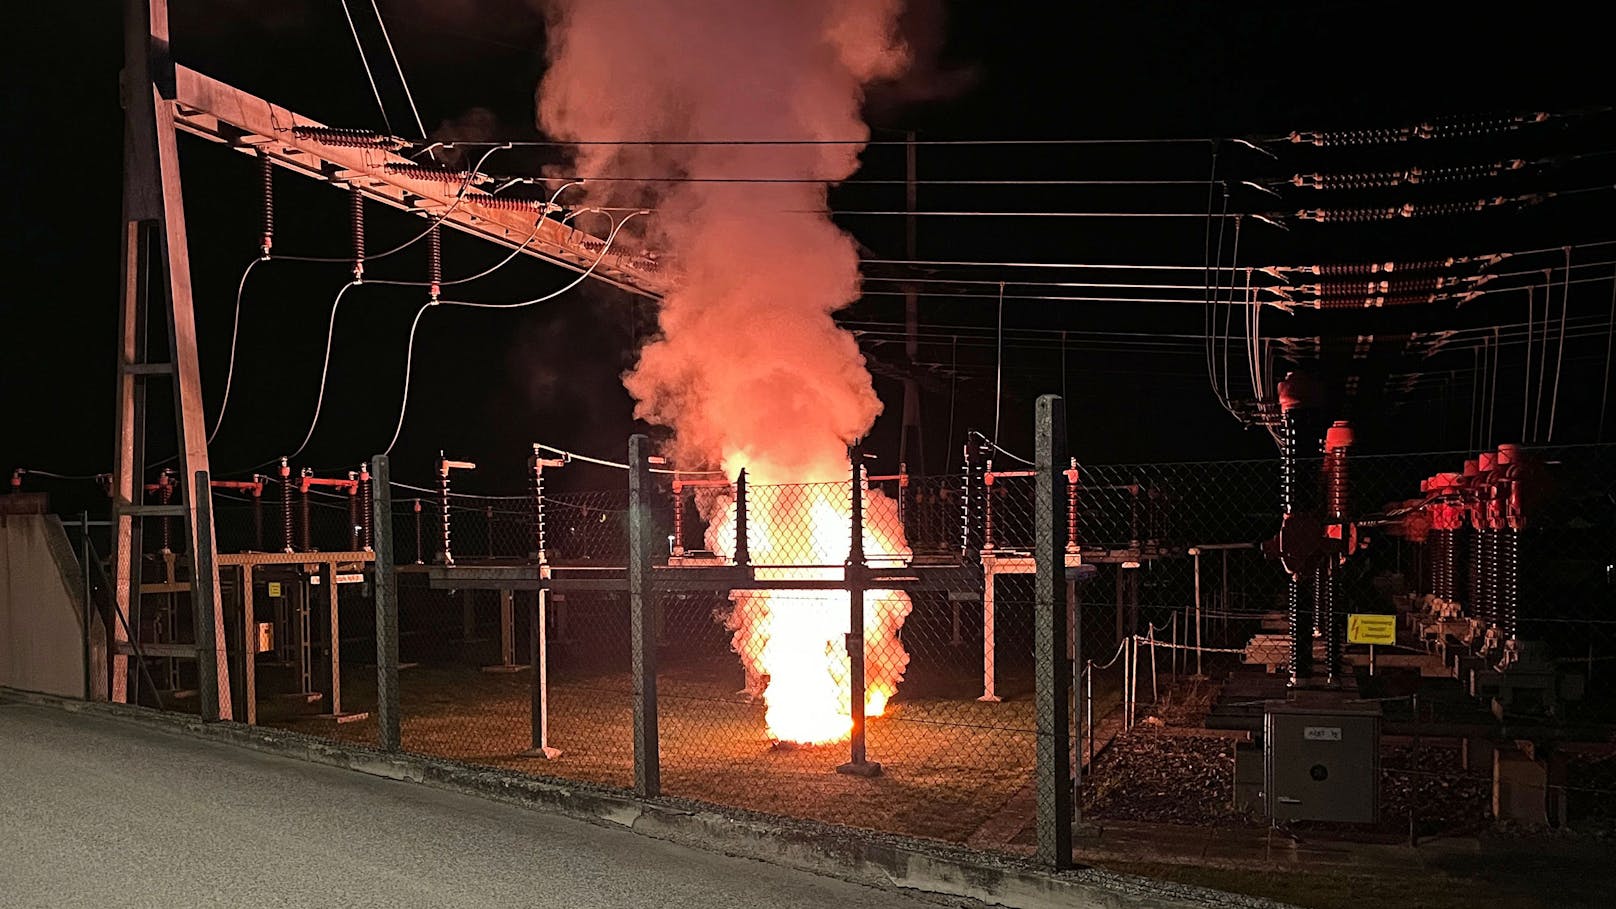 Blackout-Gefahr – Umspannwerk in Flammen